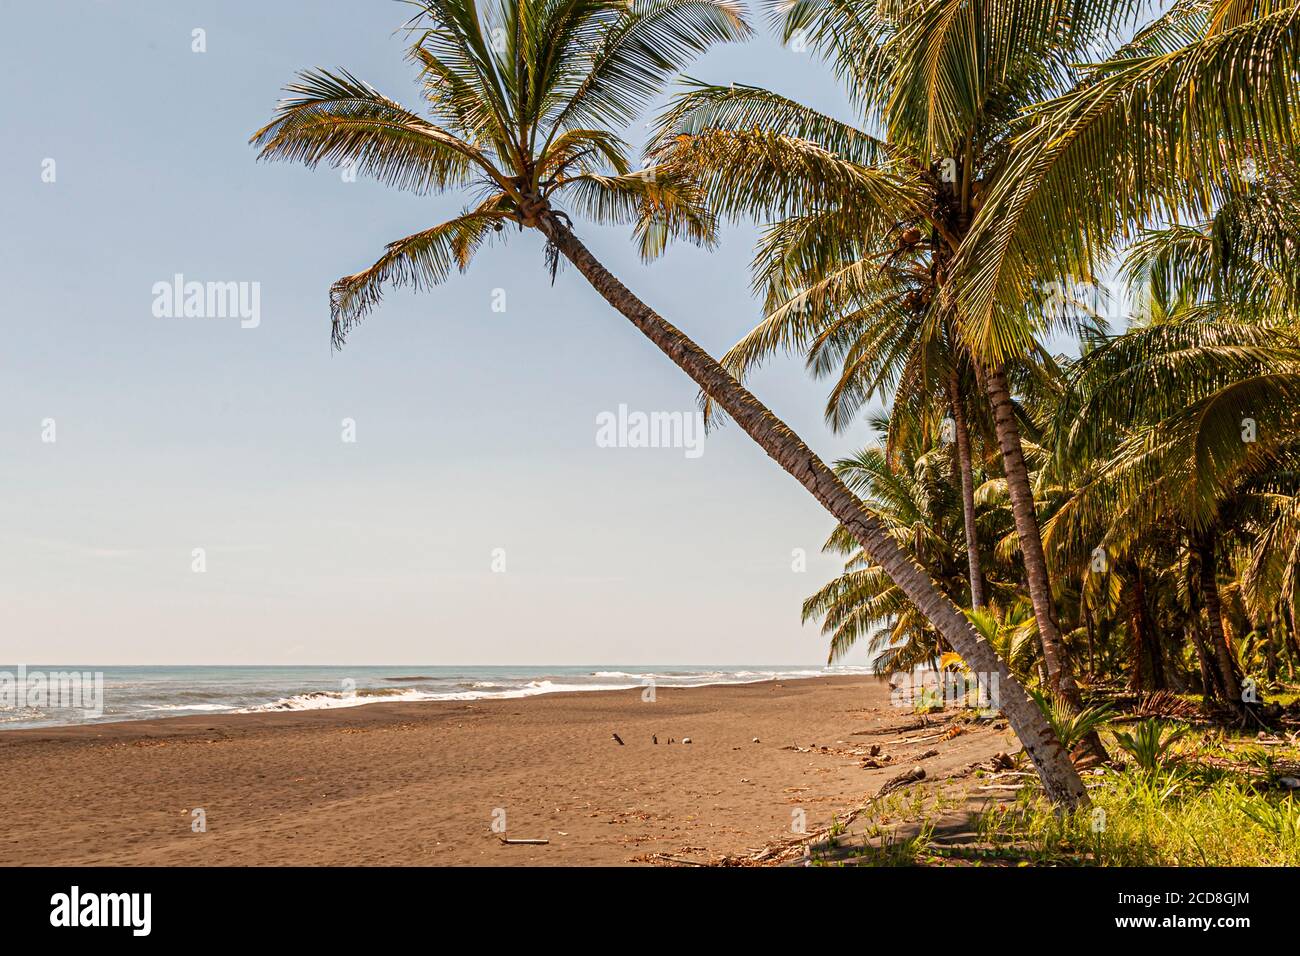 Biosphäre Citizen Scientist Project Camp zur Rettung von Meeresschildkröten in Reventazón, Costa Rica Stockfoto